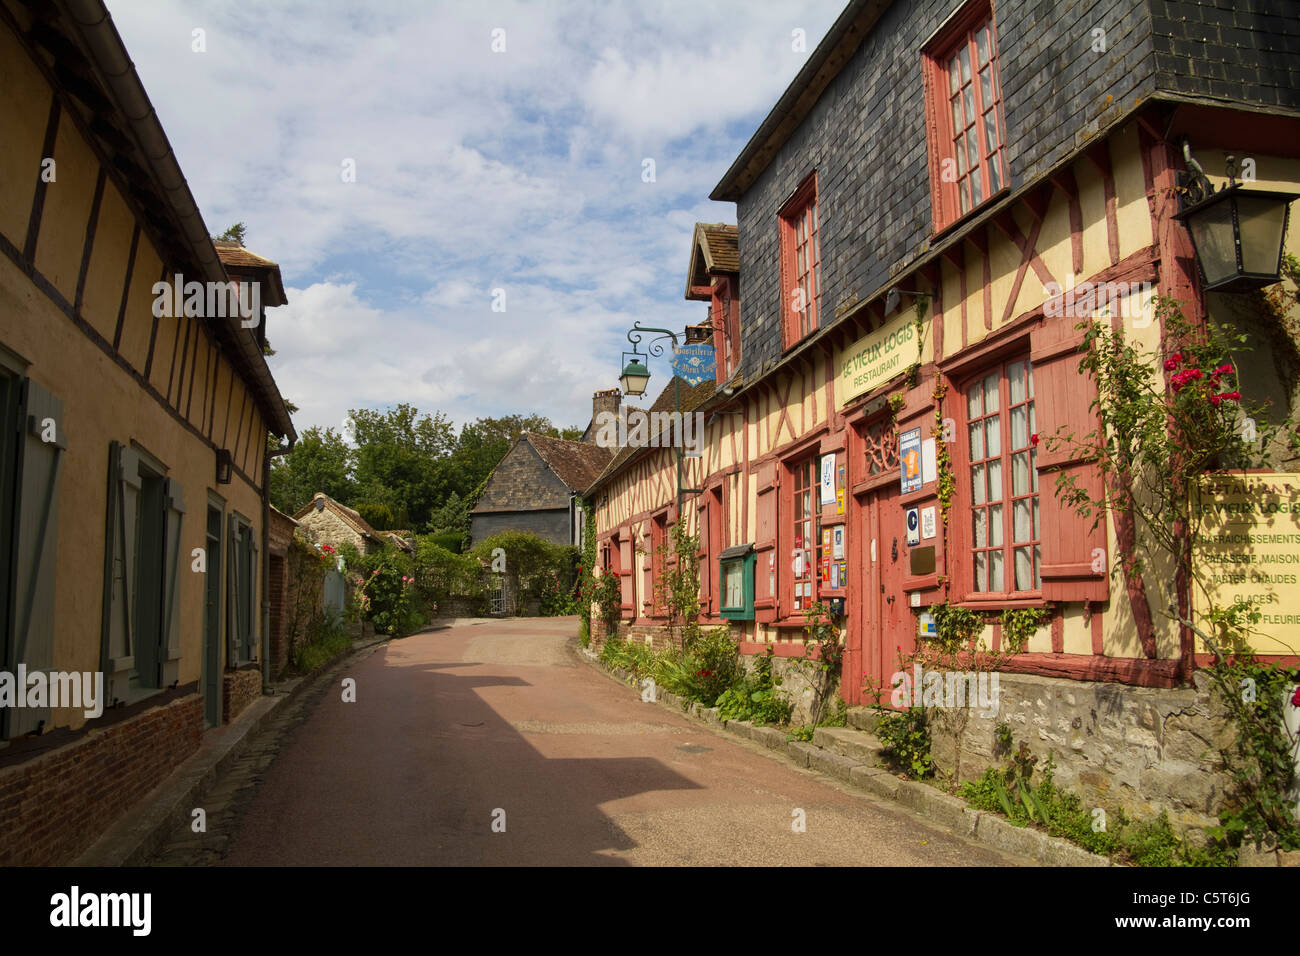 Le Vieux Logis Restaurant, Gerberoy Village, France Stock Photo